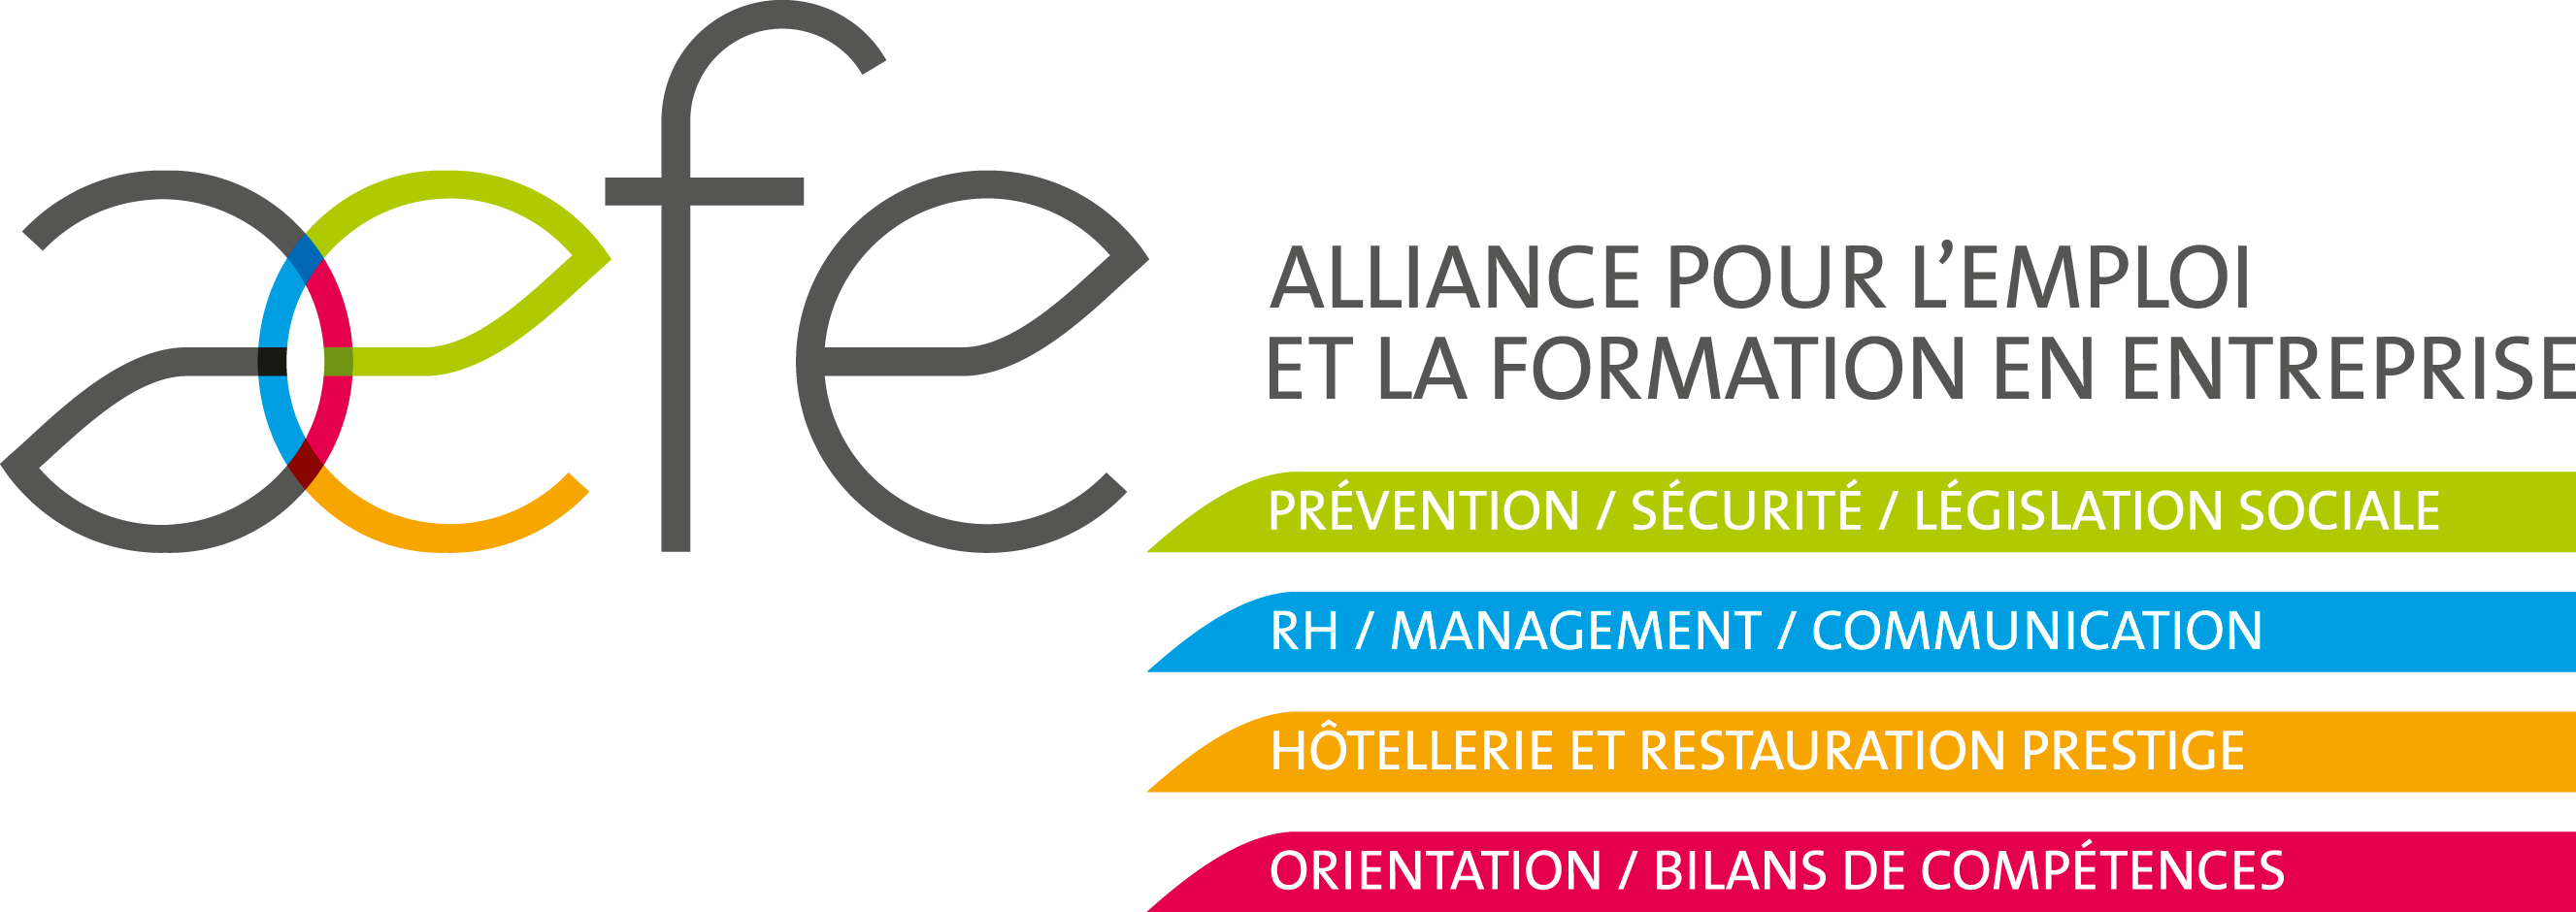 logo AEFE (Alliance pour l'Emploi et la Formation en Entreprise)